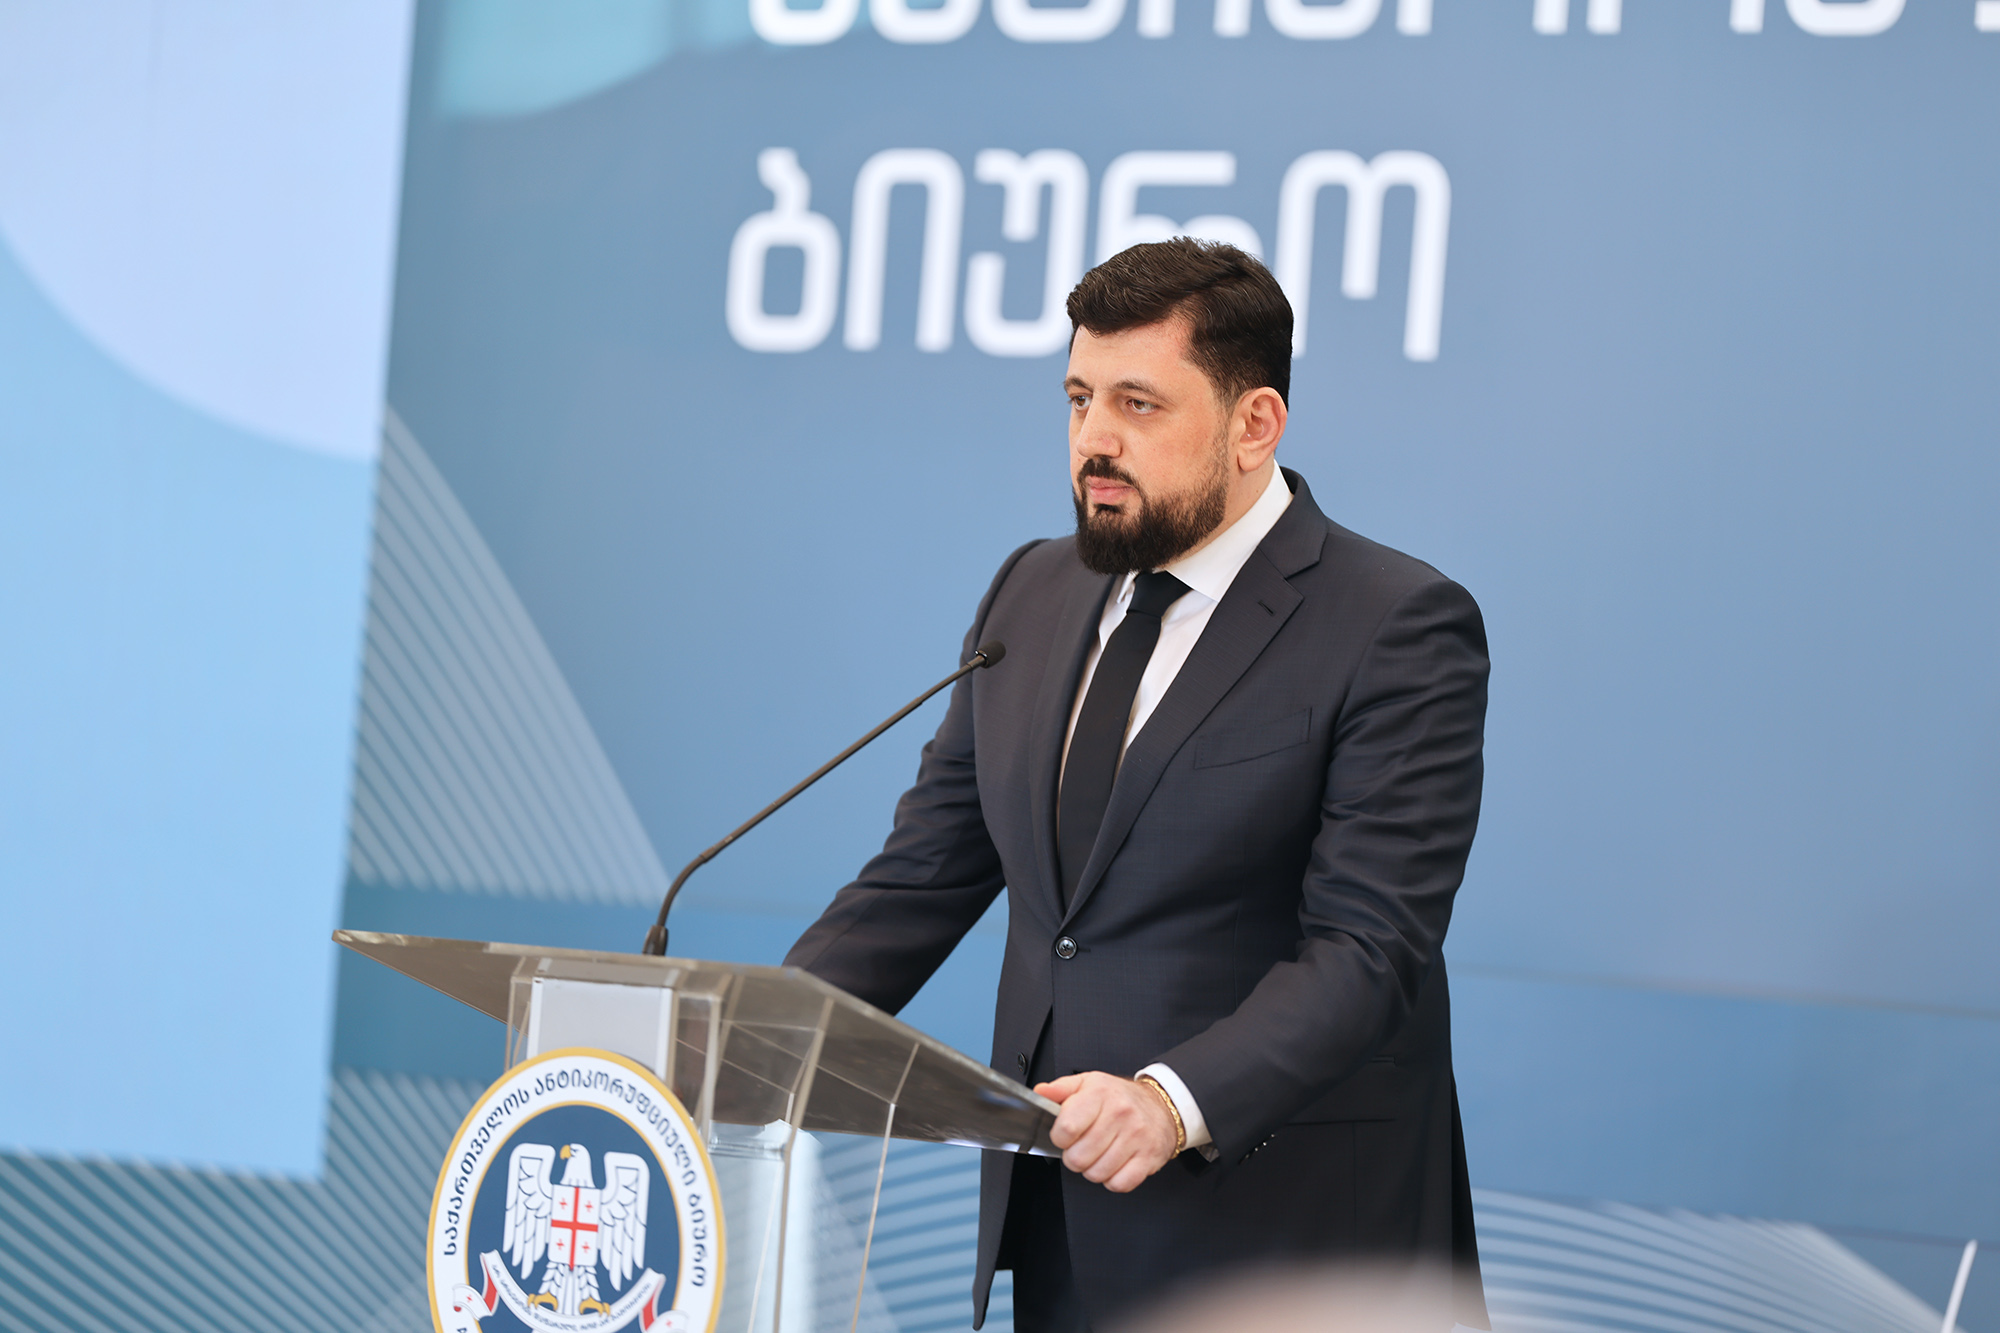 Razhden Kuprashvili, Head of the Anti-Corruption Bureau, presented the annual report